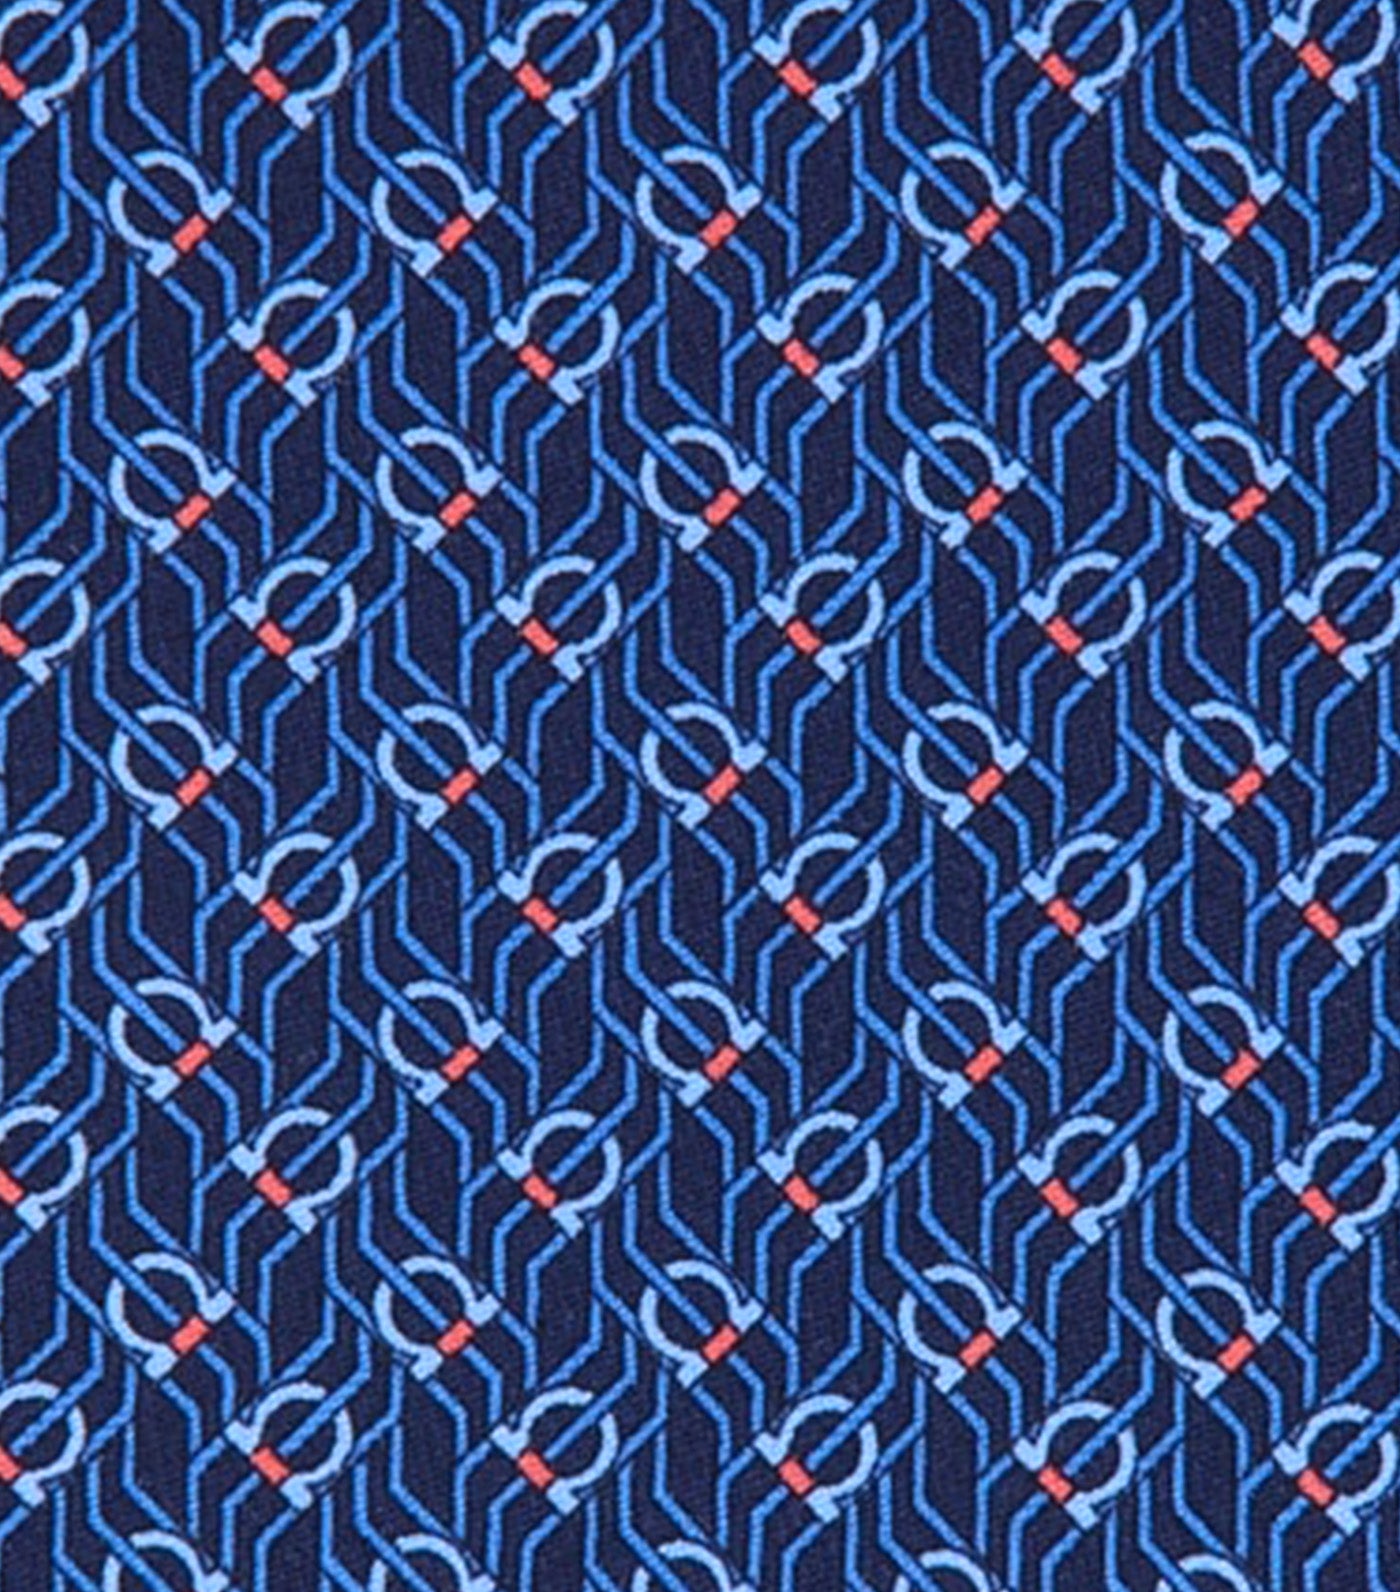 Tetris Print Tie Navy Blue